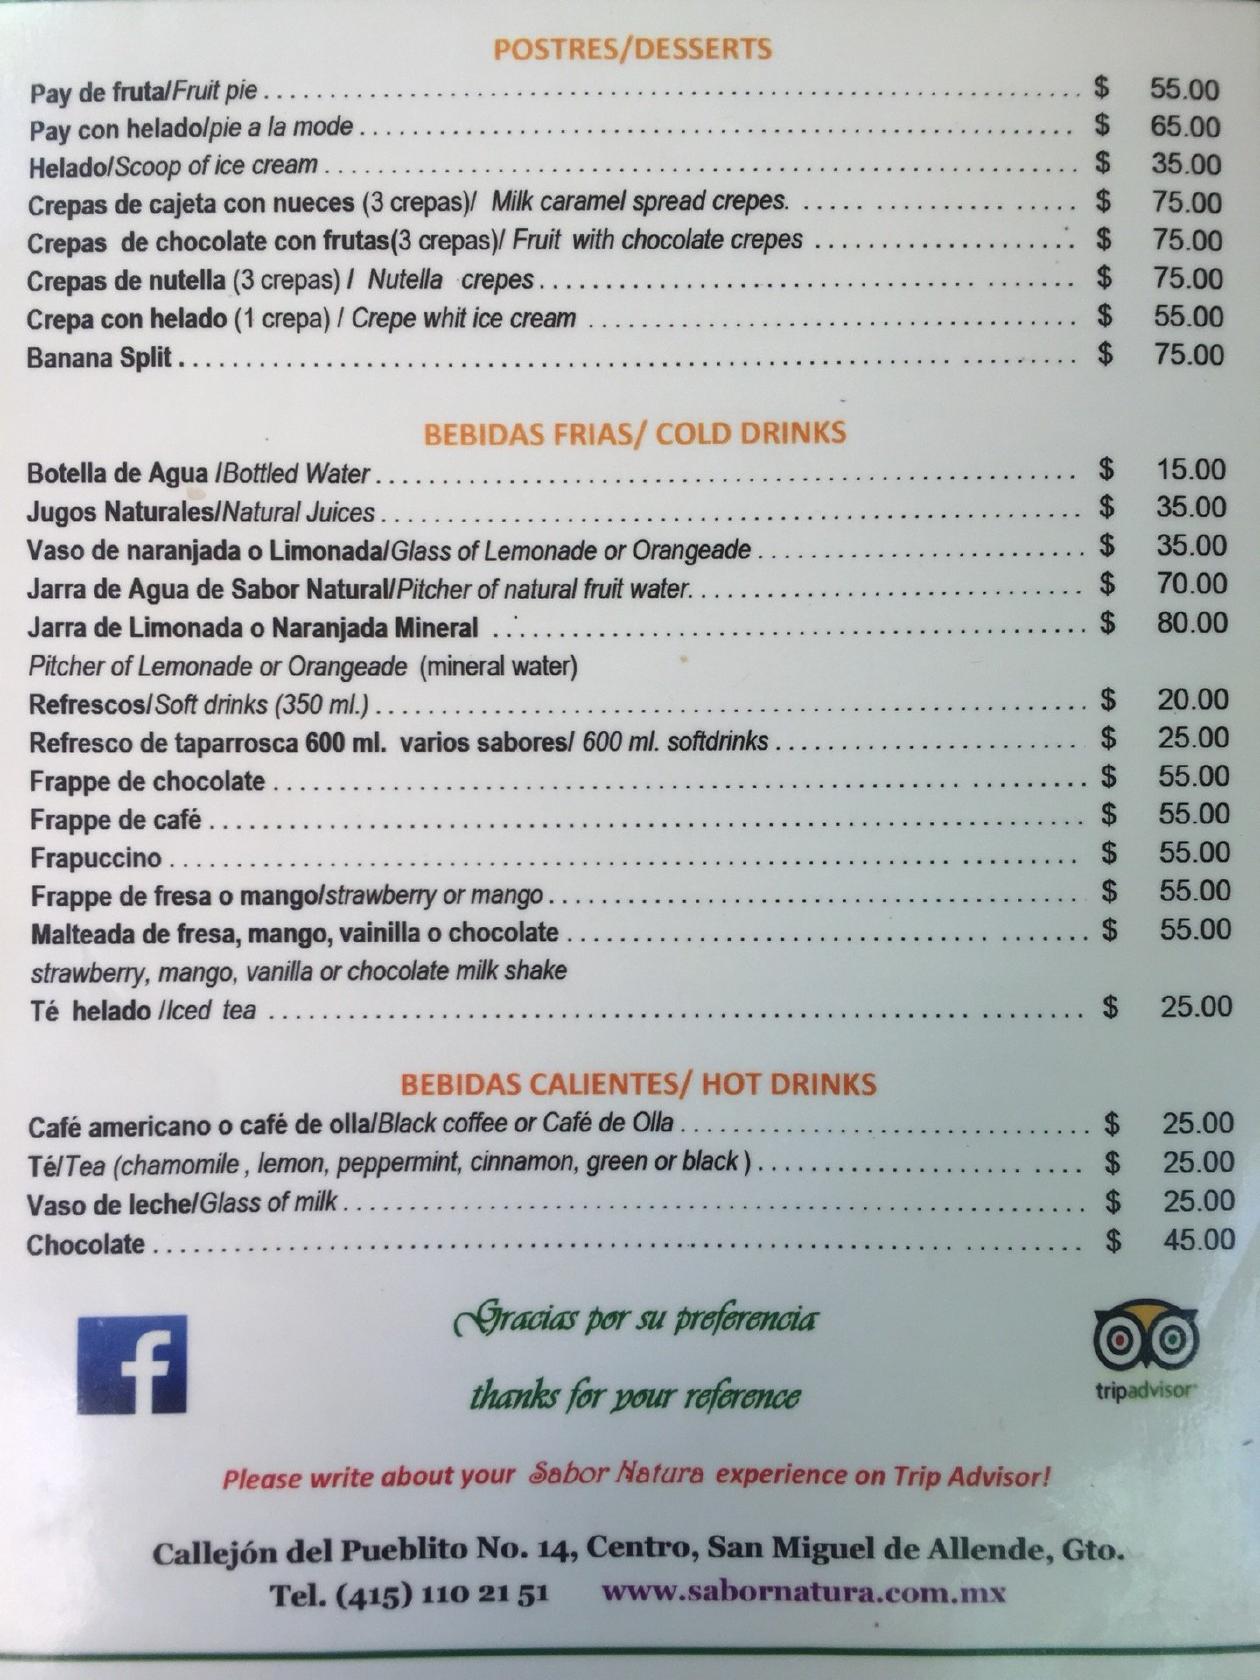 Menu at Sabor Natura restaurant, San Miguel de Allende, Del Pueblito 14